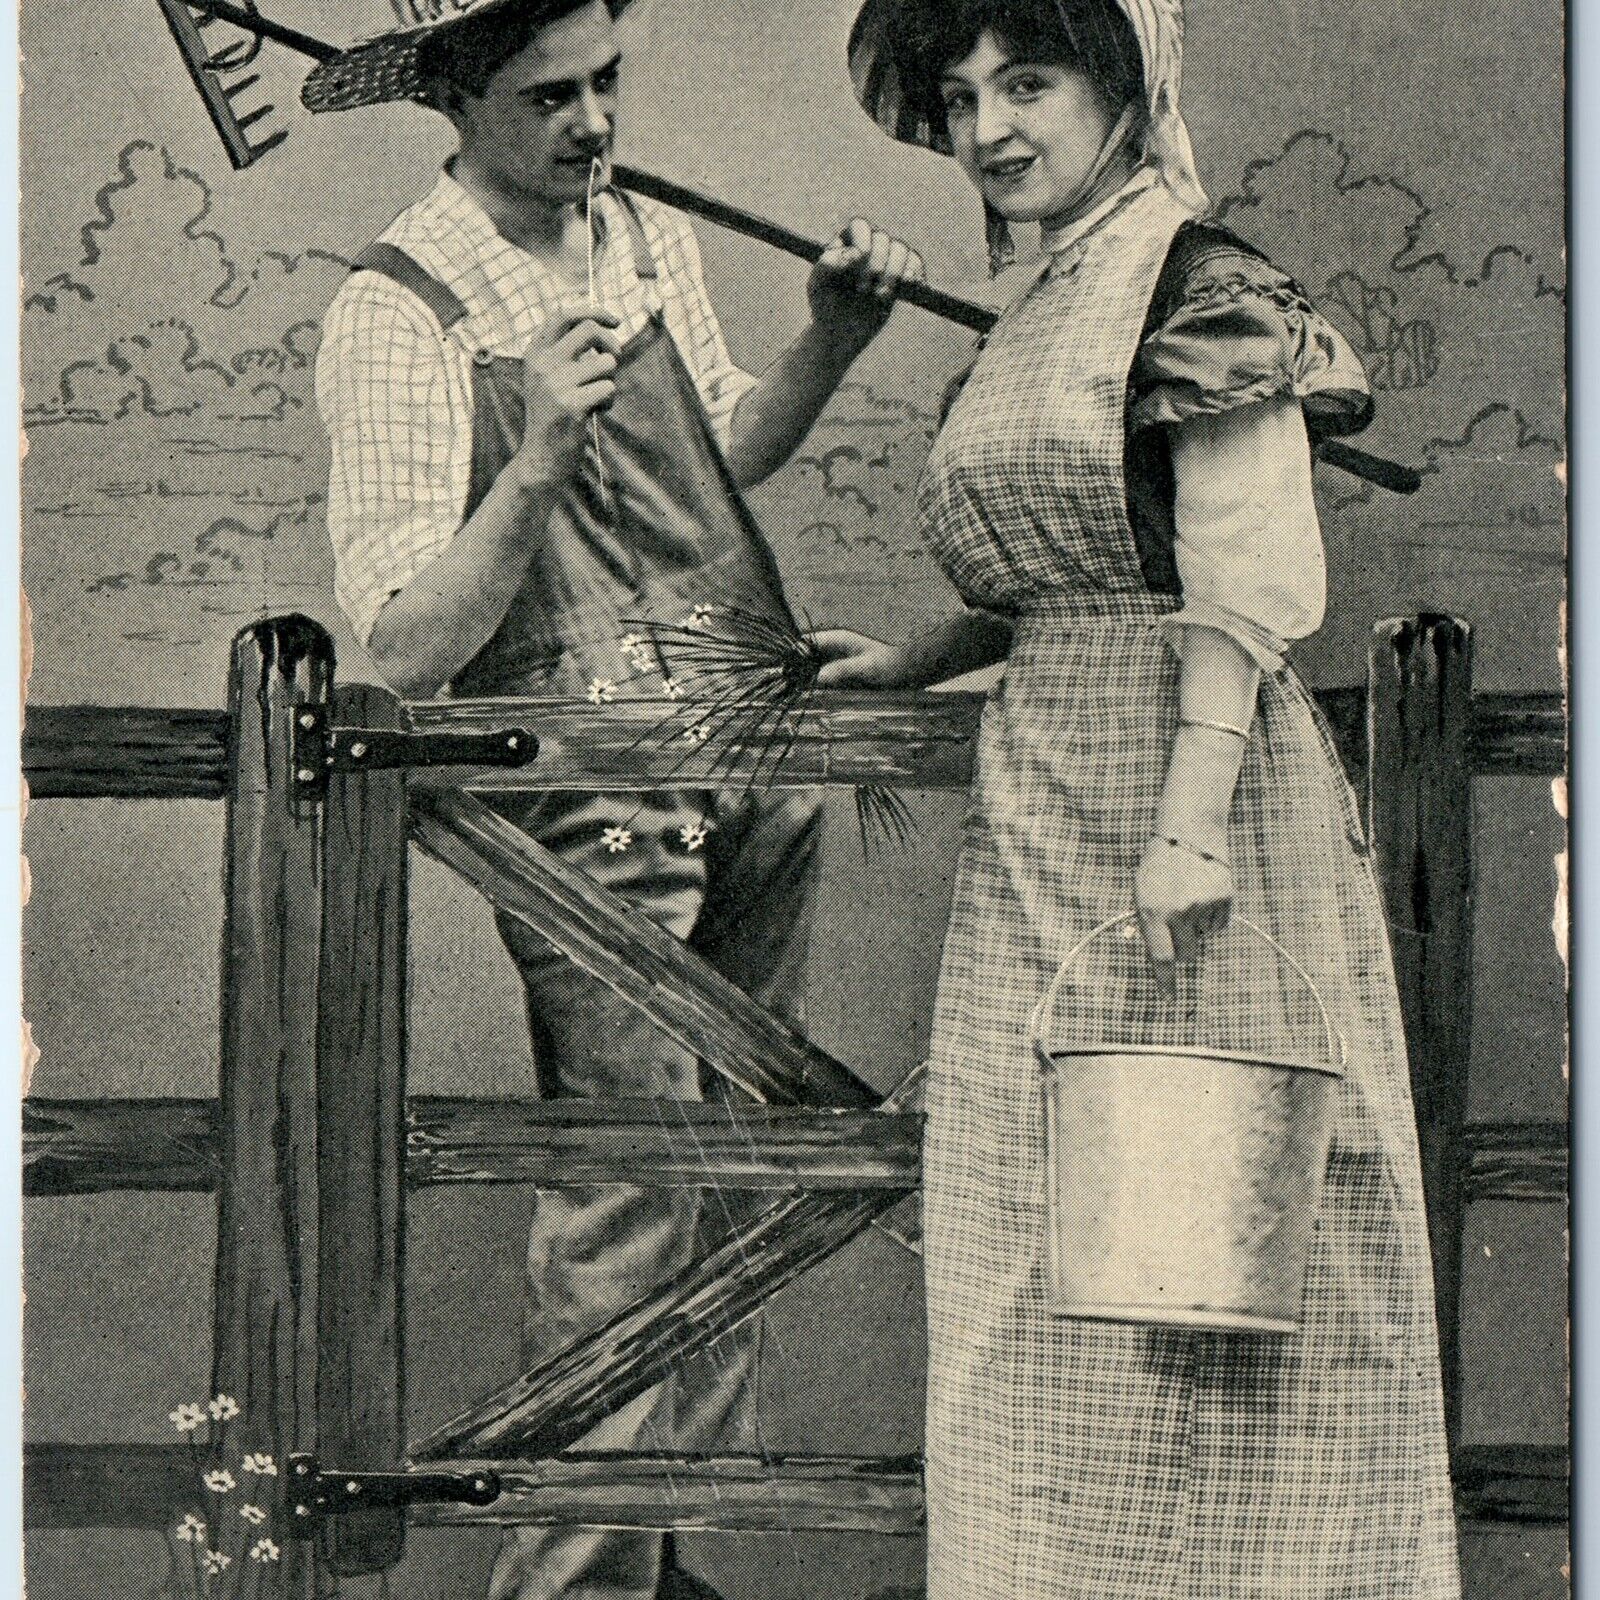 1909 Adorable Farmer Romance Dairymaid Love Smile Cute Girl Bullseye Cancel A169